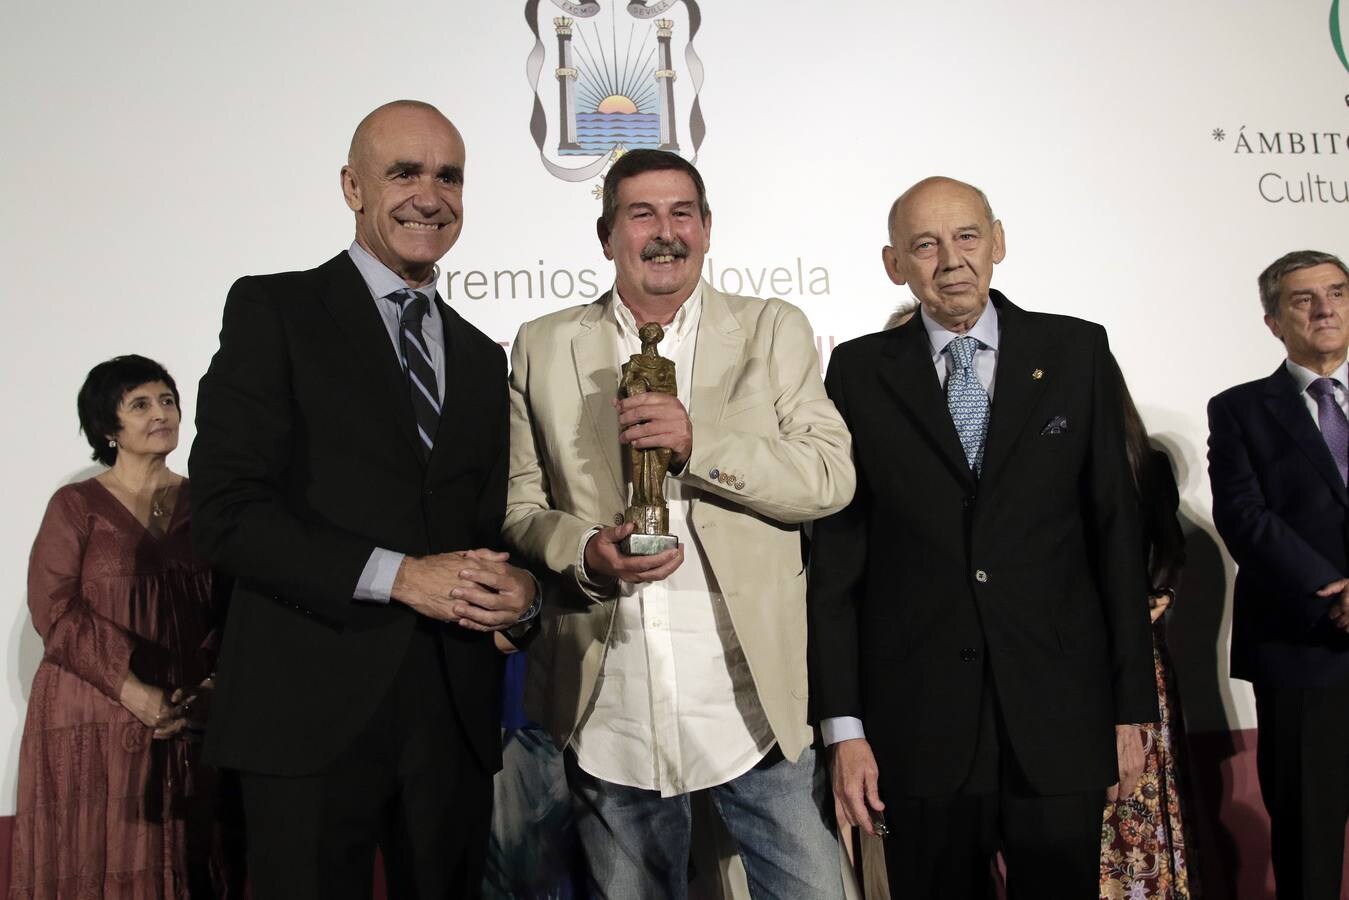 Entrega del LIV Premio de Novela Ateneo de Sevilla, en imágenes